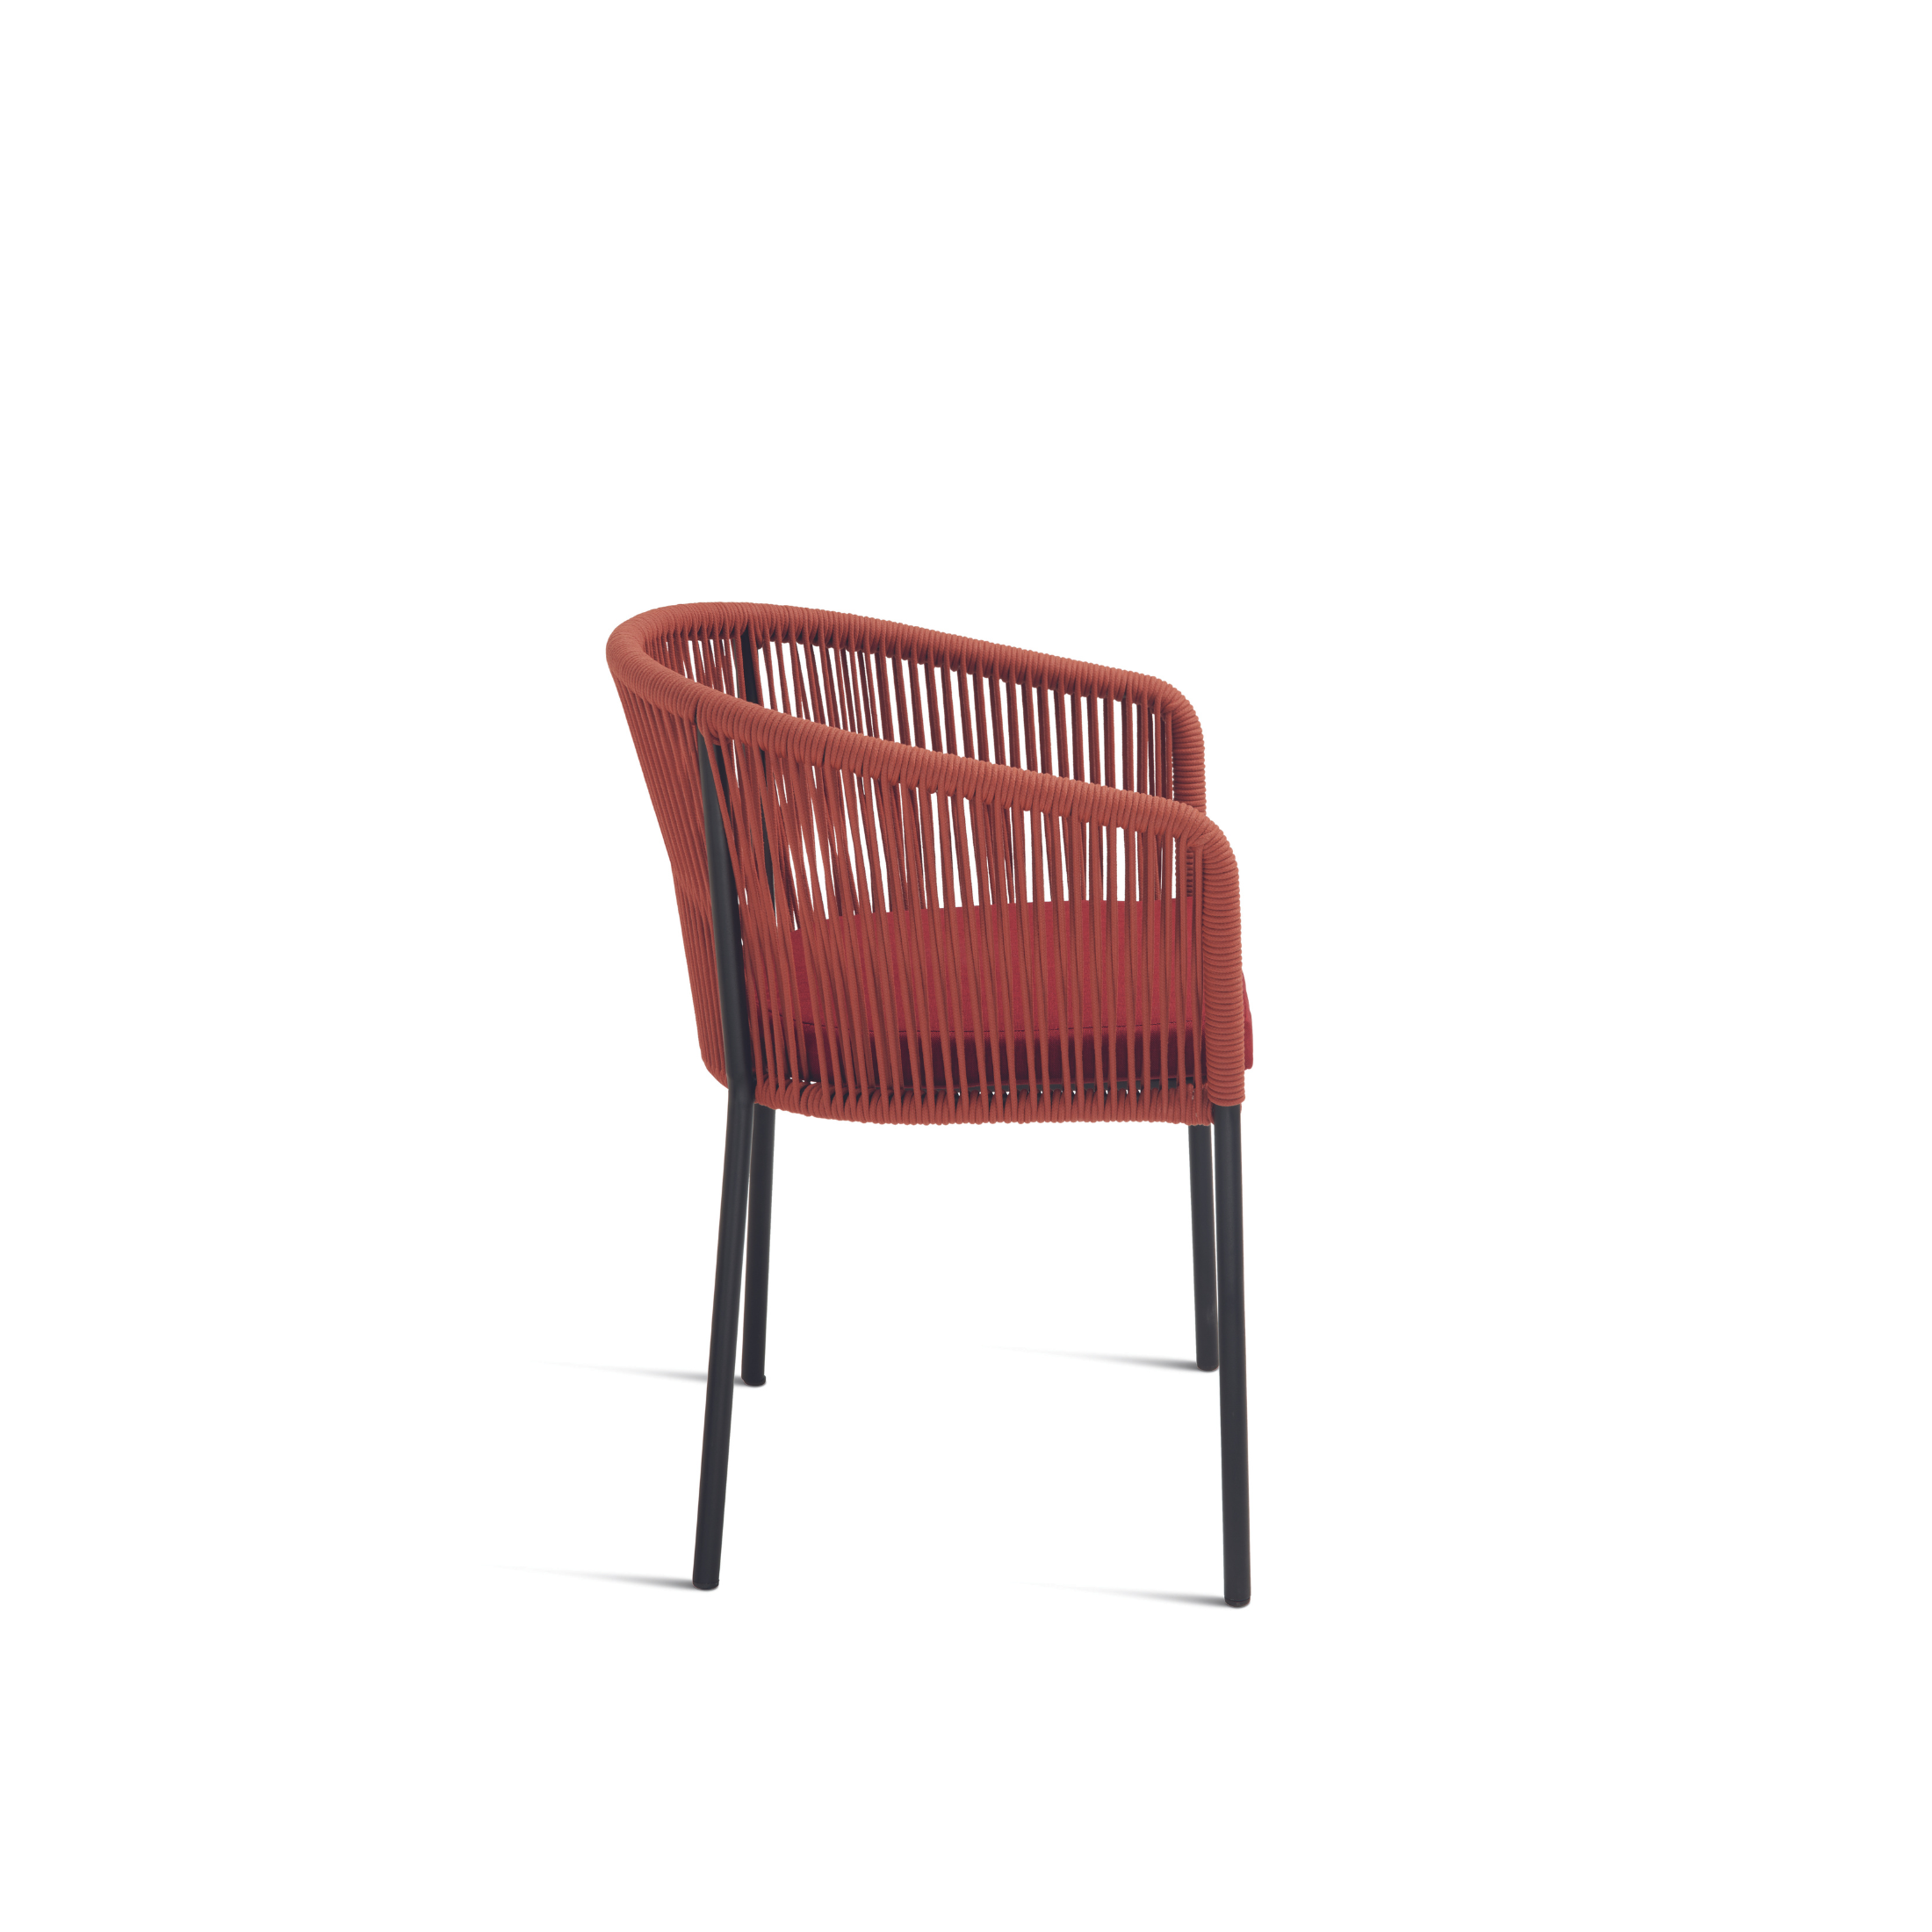 Chaise moderne en corde "Joan" assise rembourrée pour salon 55x56 h78 cm